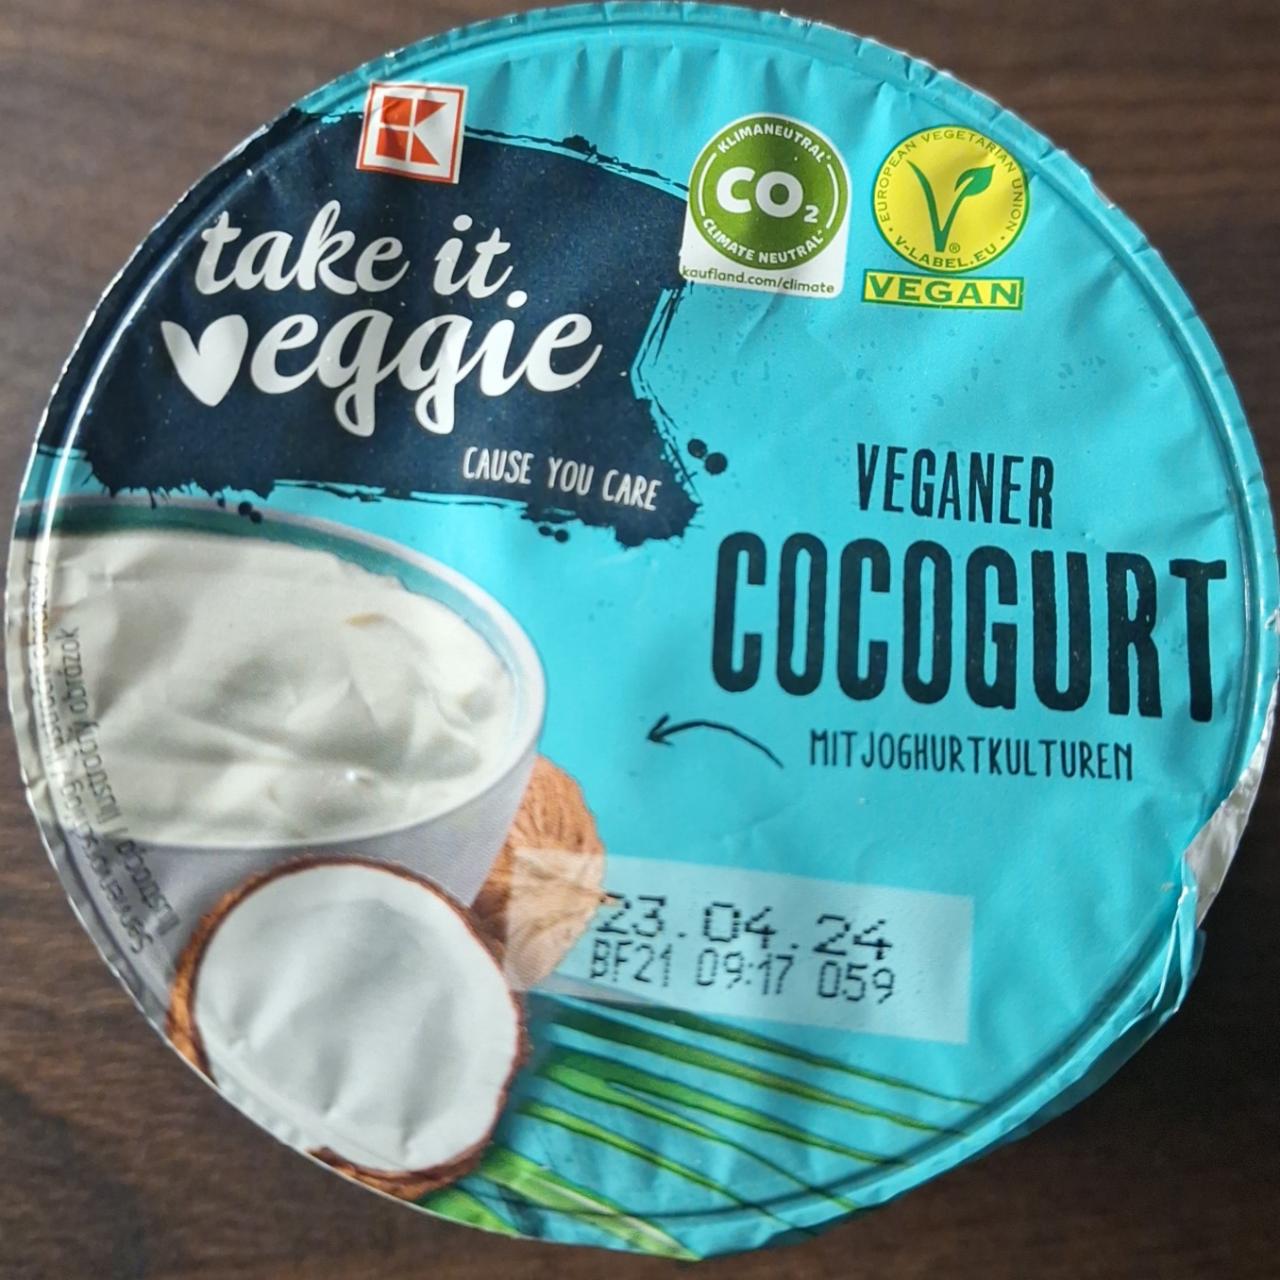 Fotografie - Veganer Cocogurt K-take it veggie